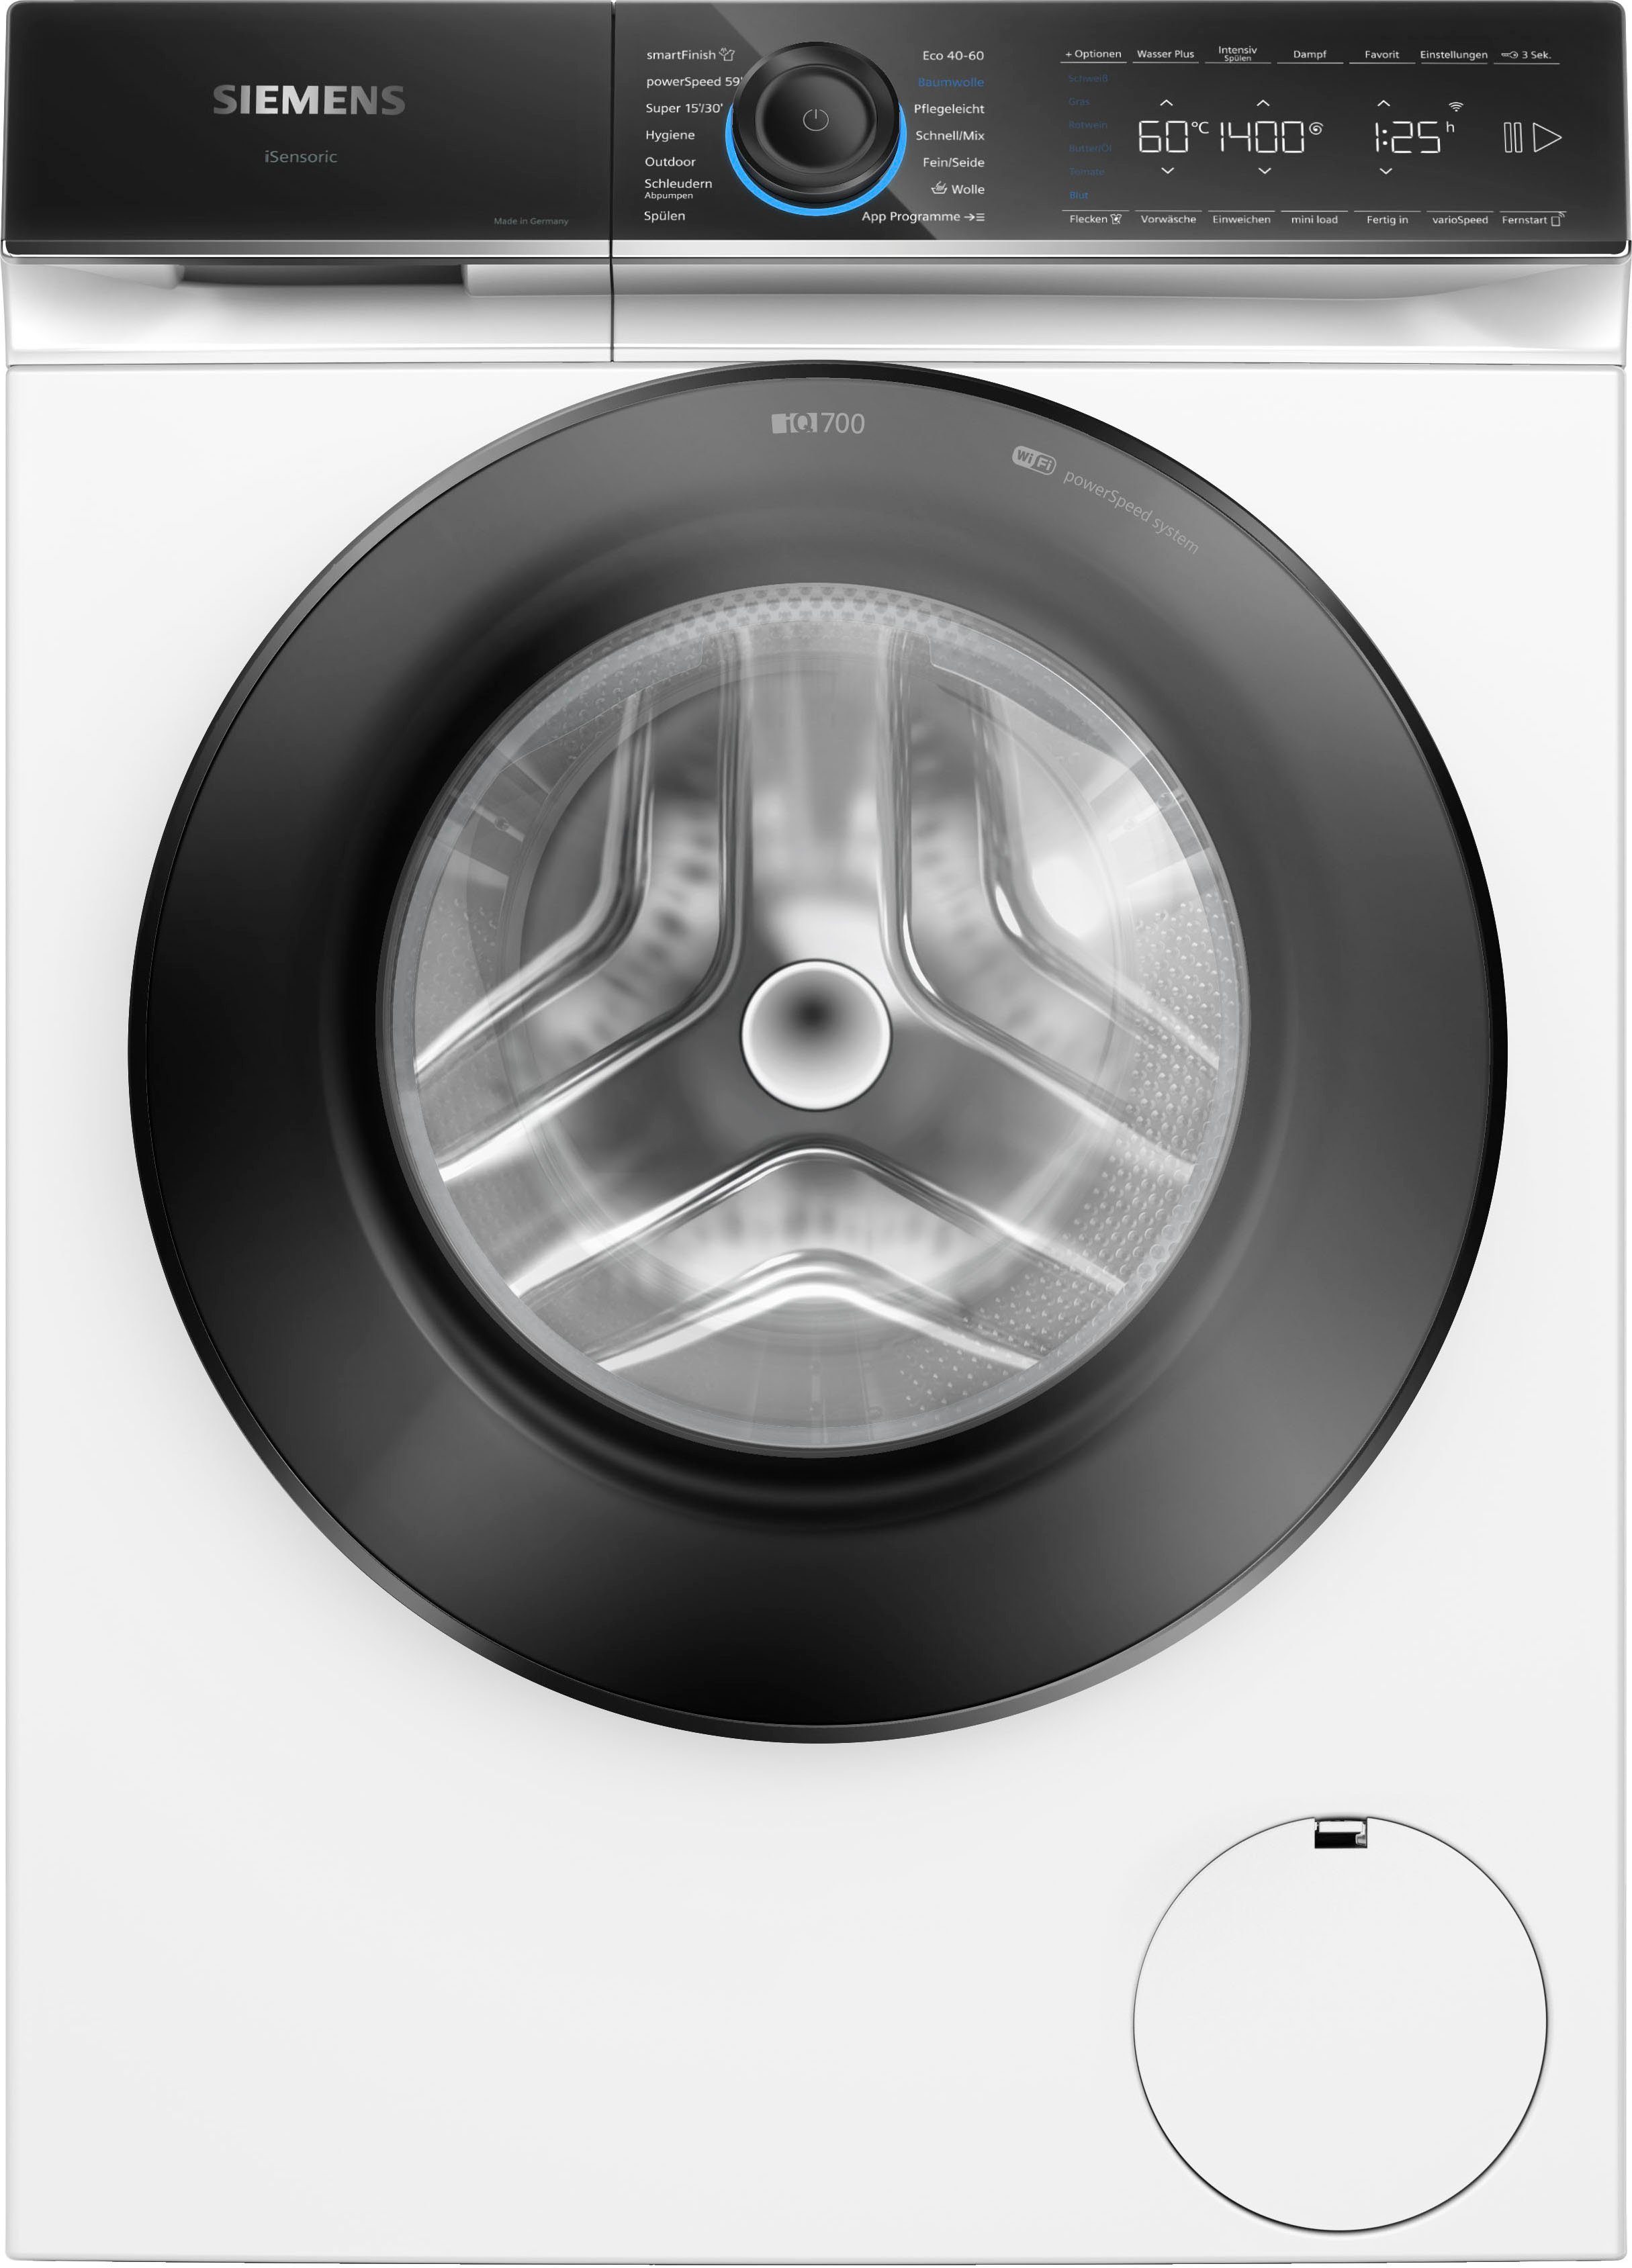 [Kostenloser Versand nur für begrenzte Zeit] SIEMENS Waschmaschine iQ700 WG54B2030, 10 1400 kg, U/min